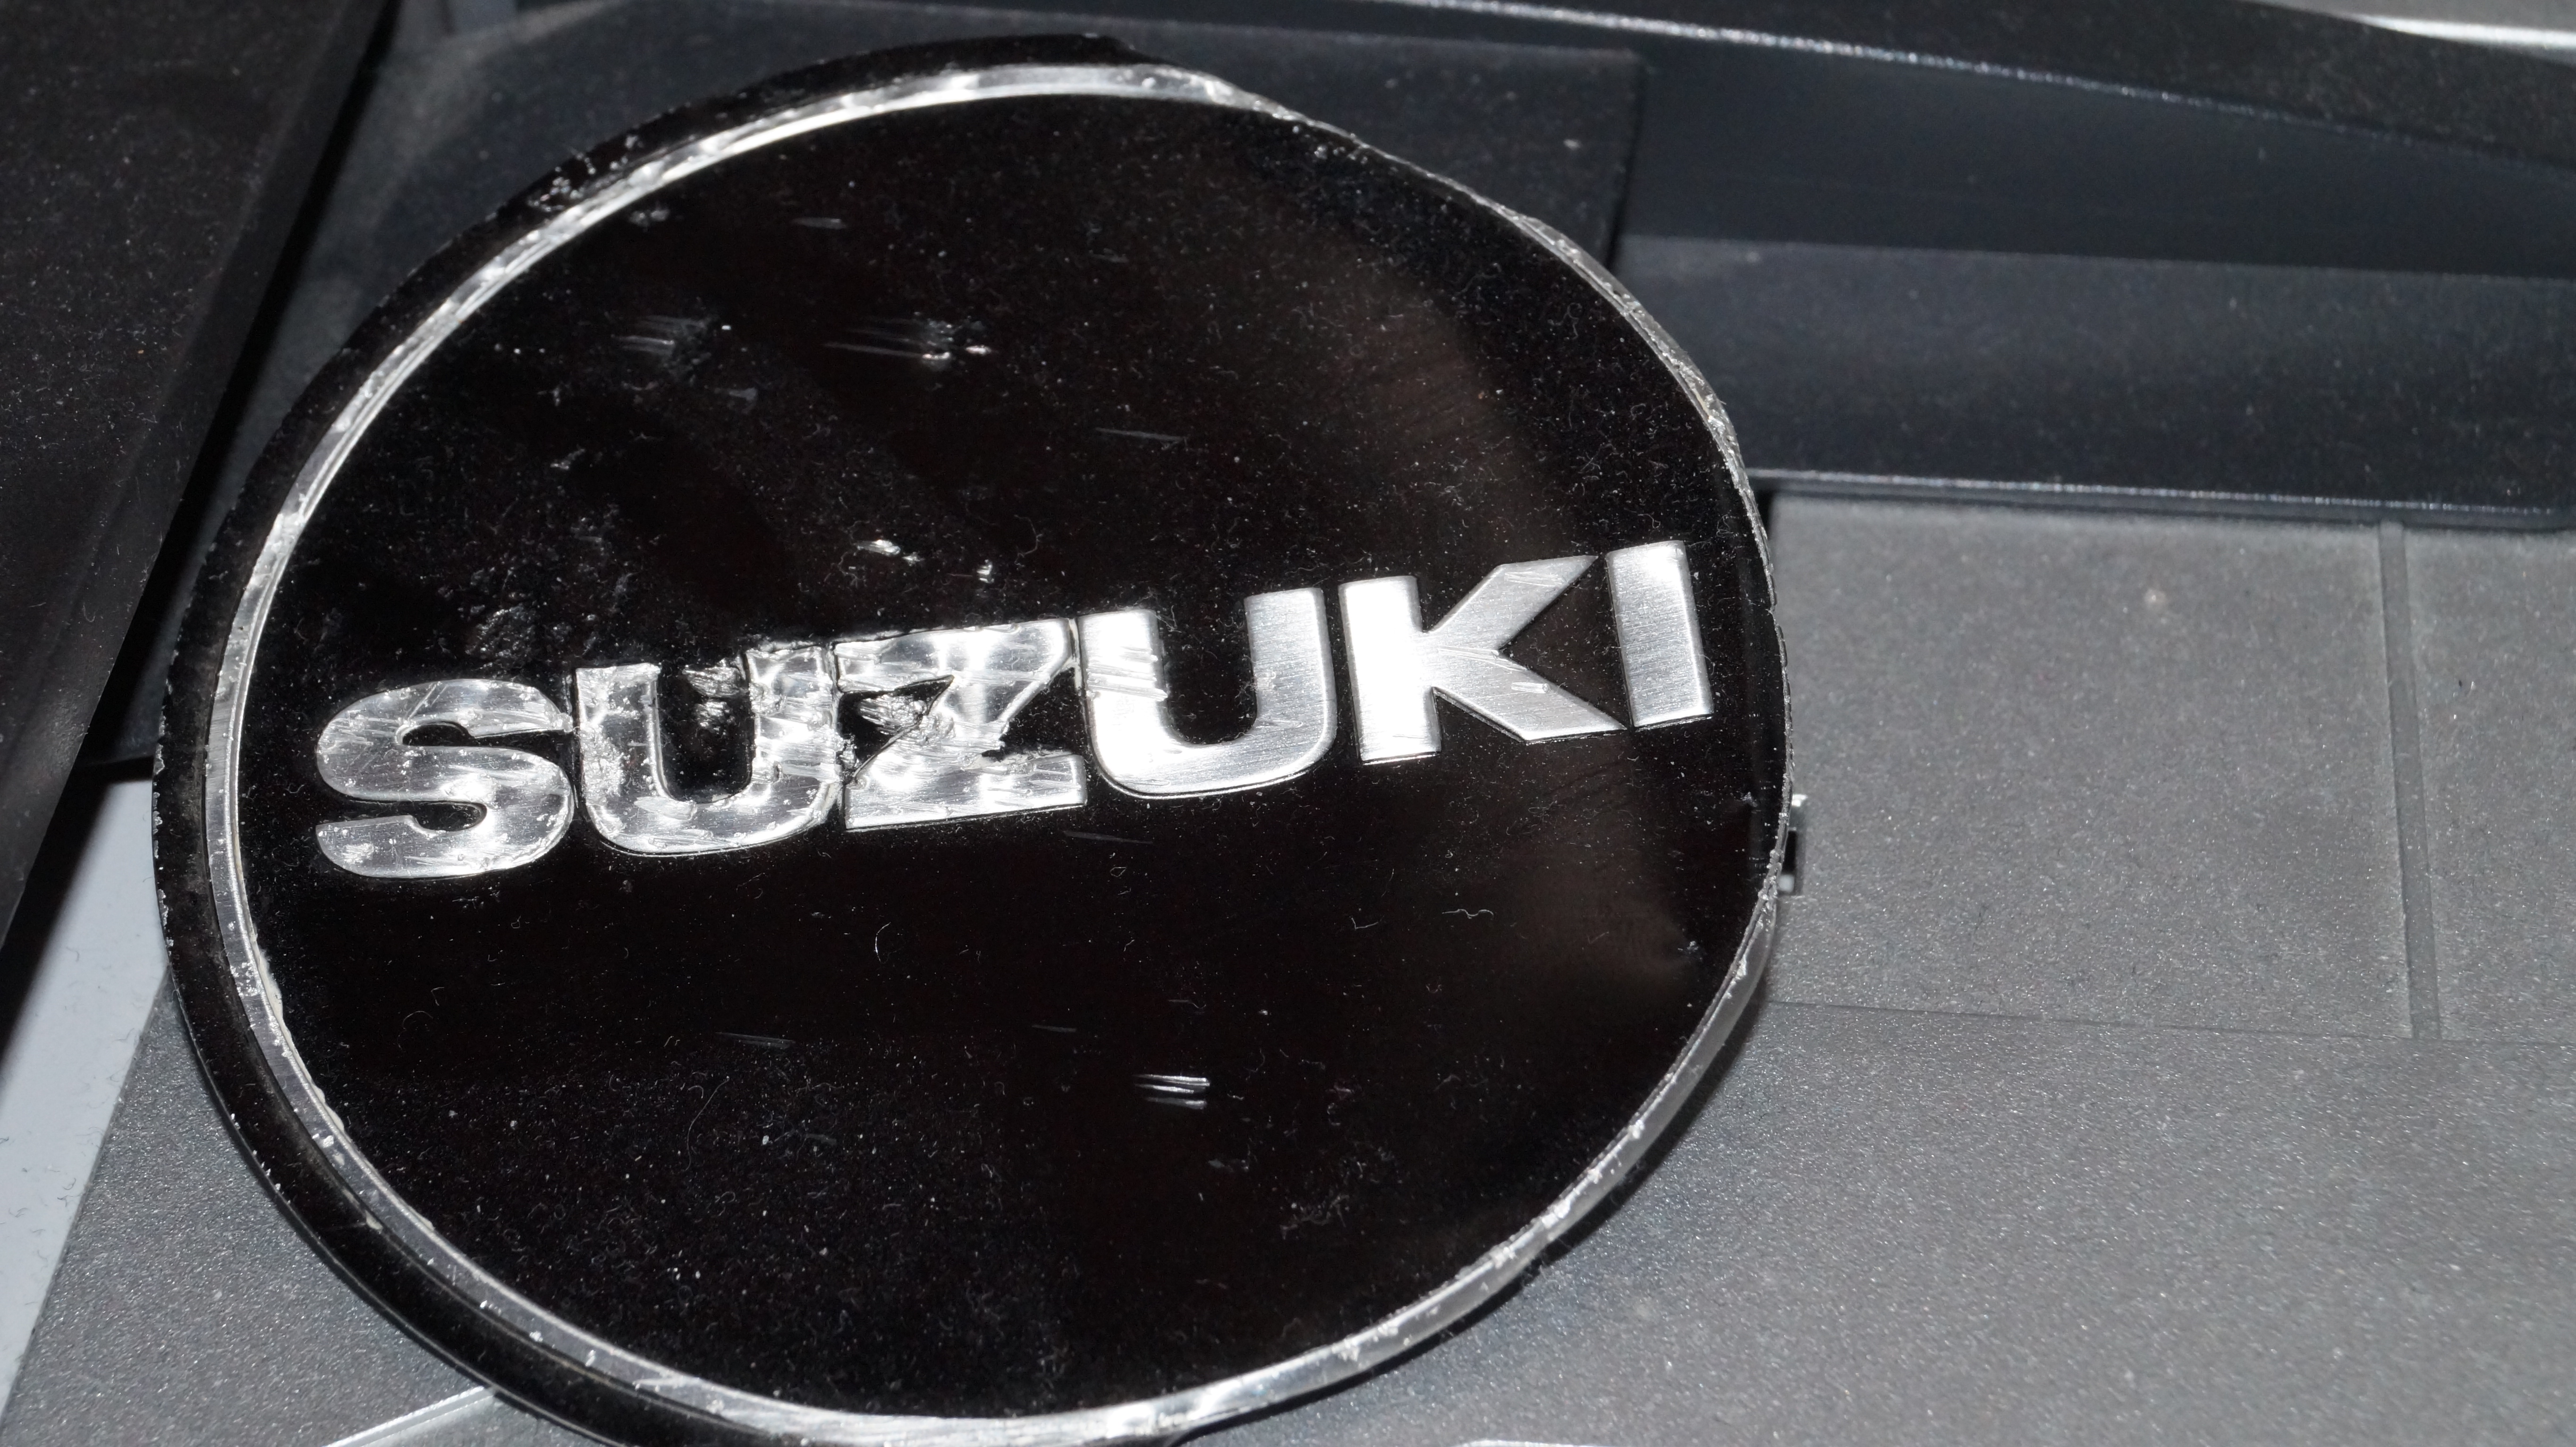 Suzuki by Audron